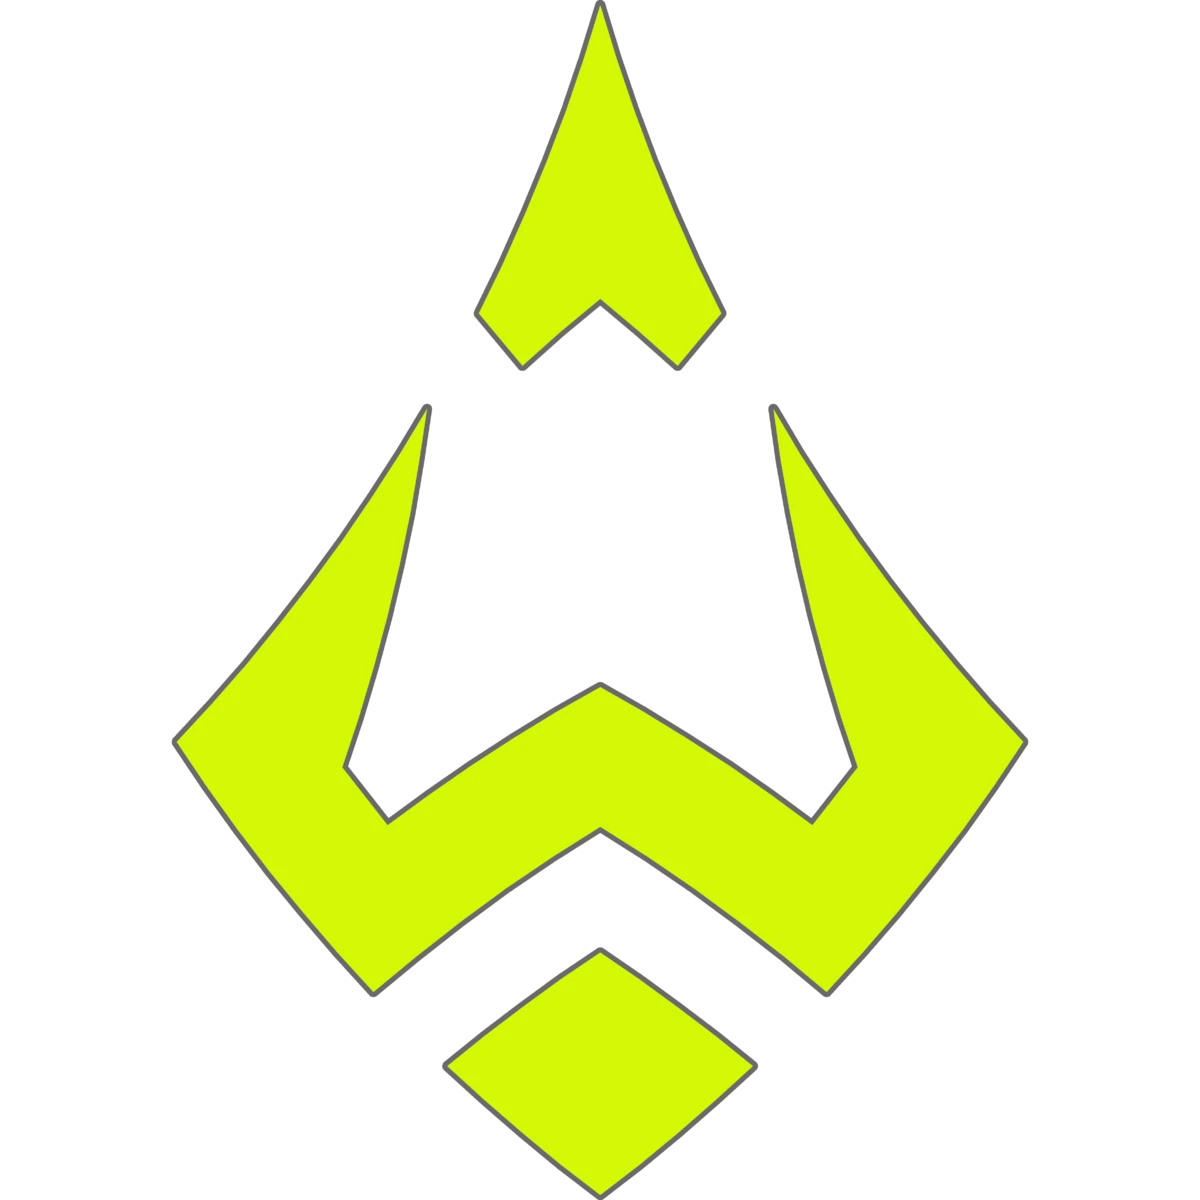 Wizards Club's logo